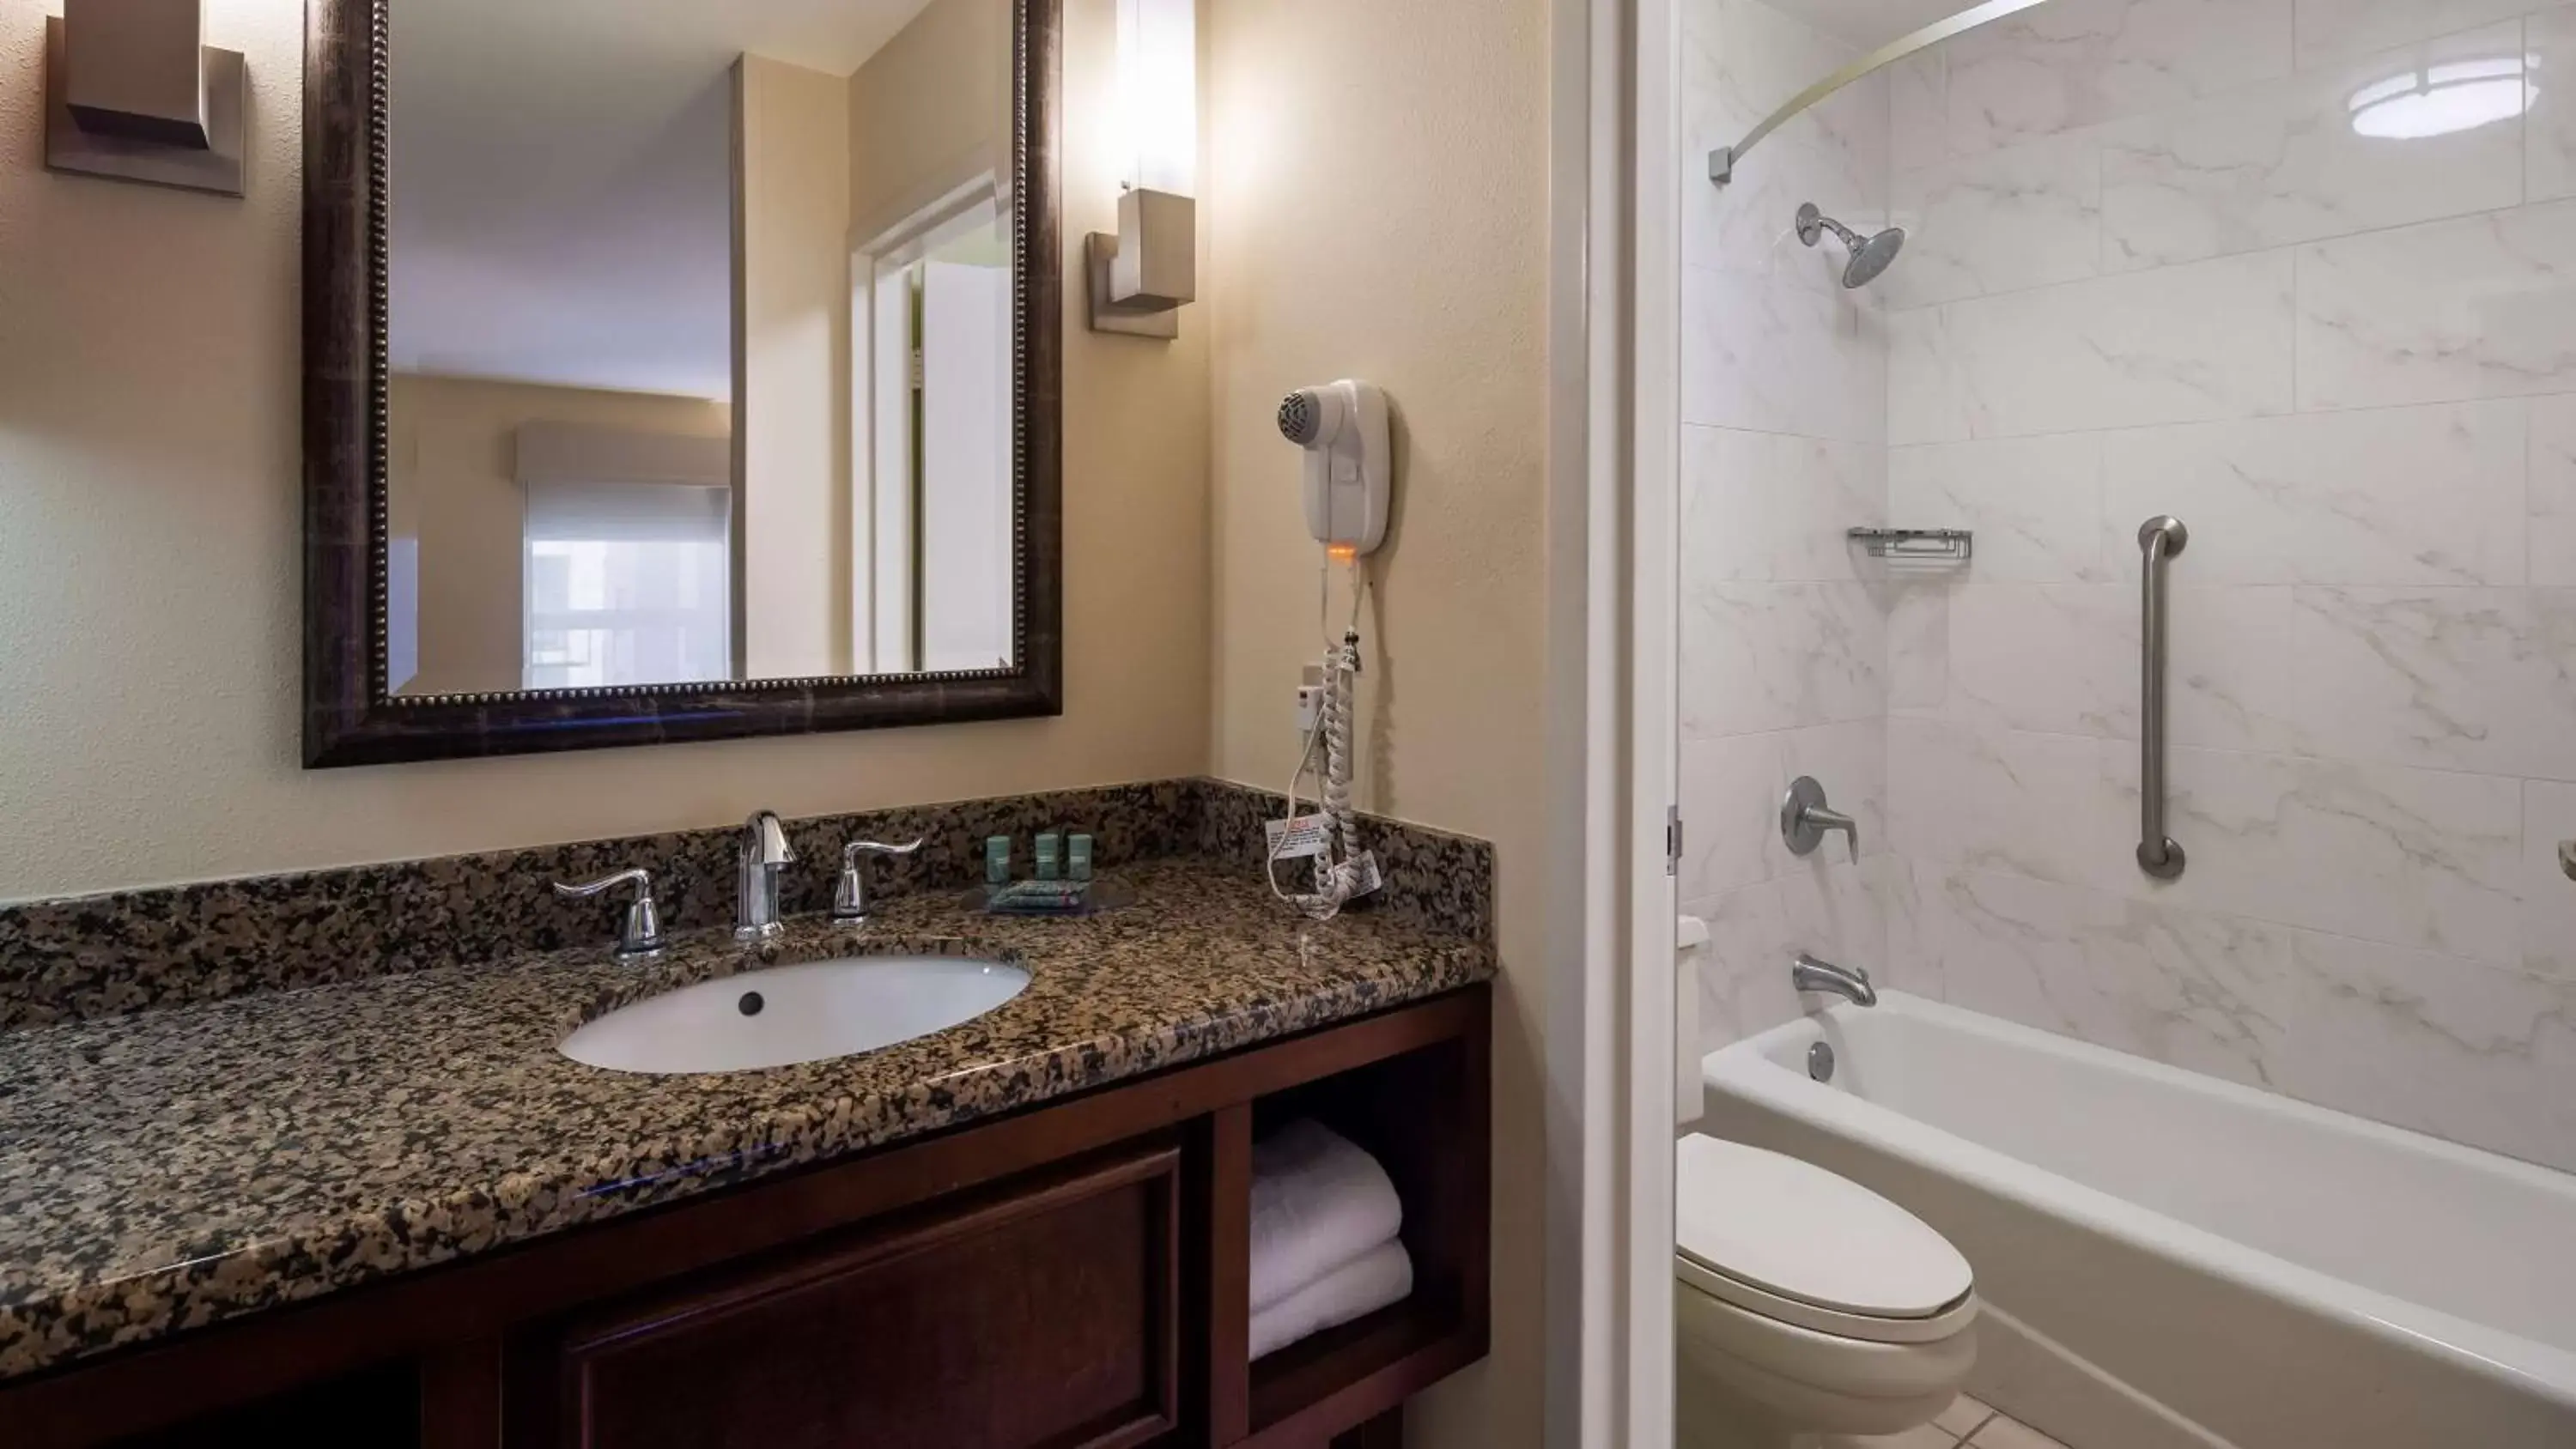 Photo of the whole room, Bathroom in Best Western Seaway Inn